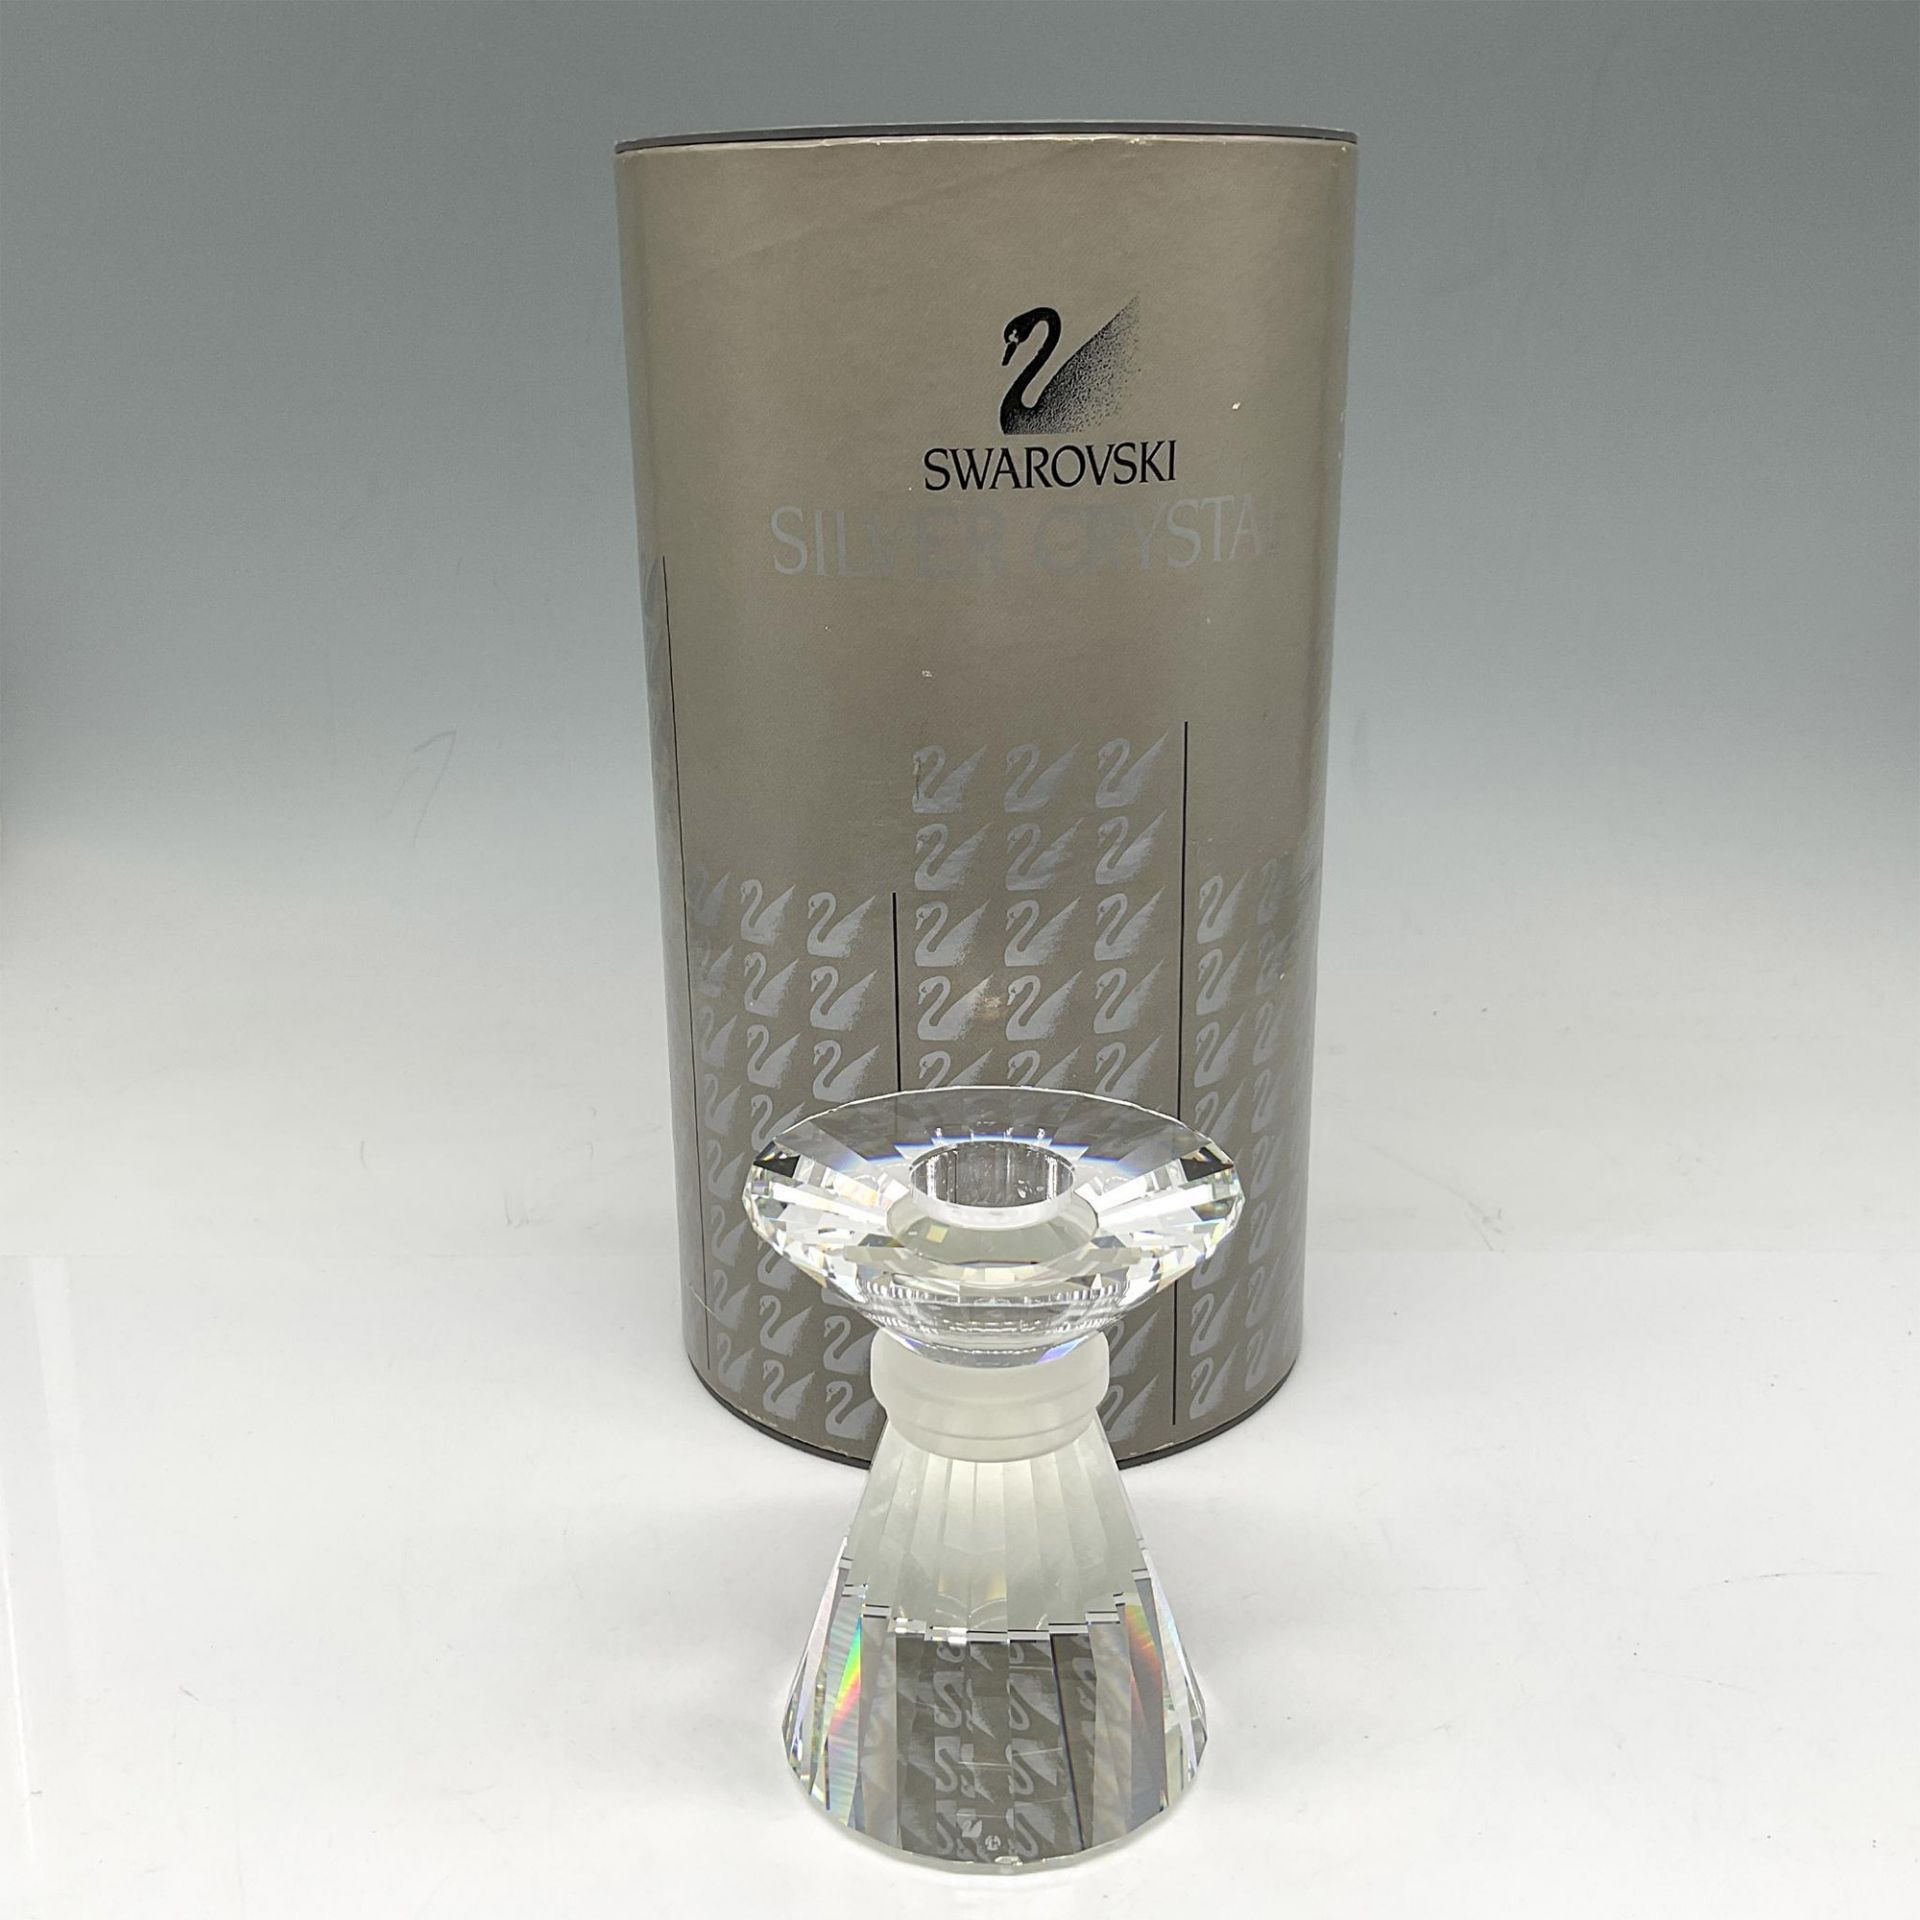 Swarovski Silver Crystal Candle Holder - Image 4 of 4